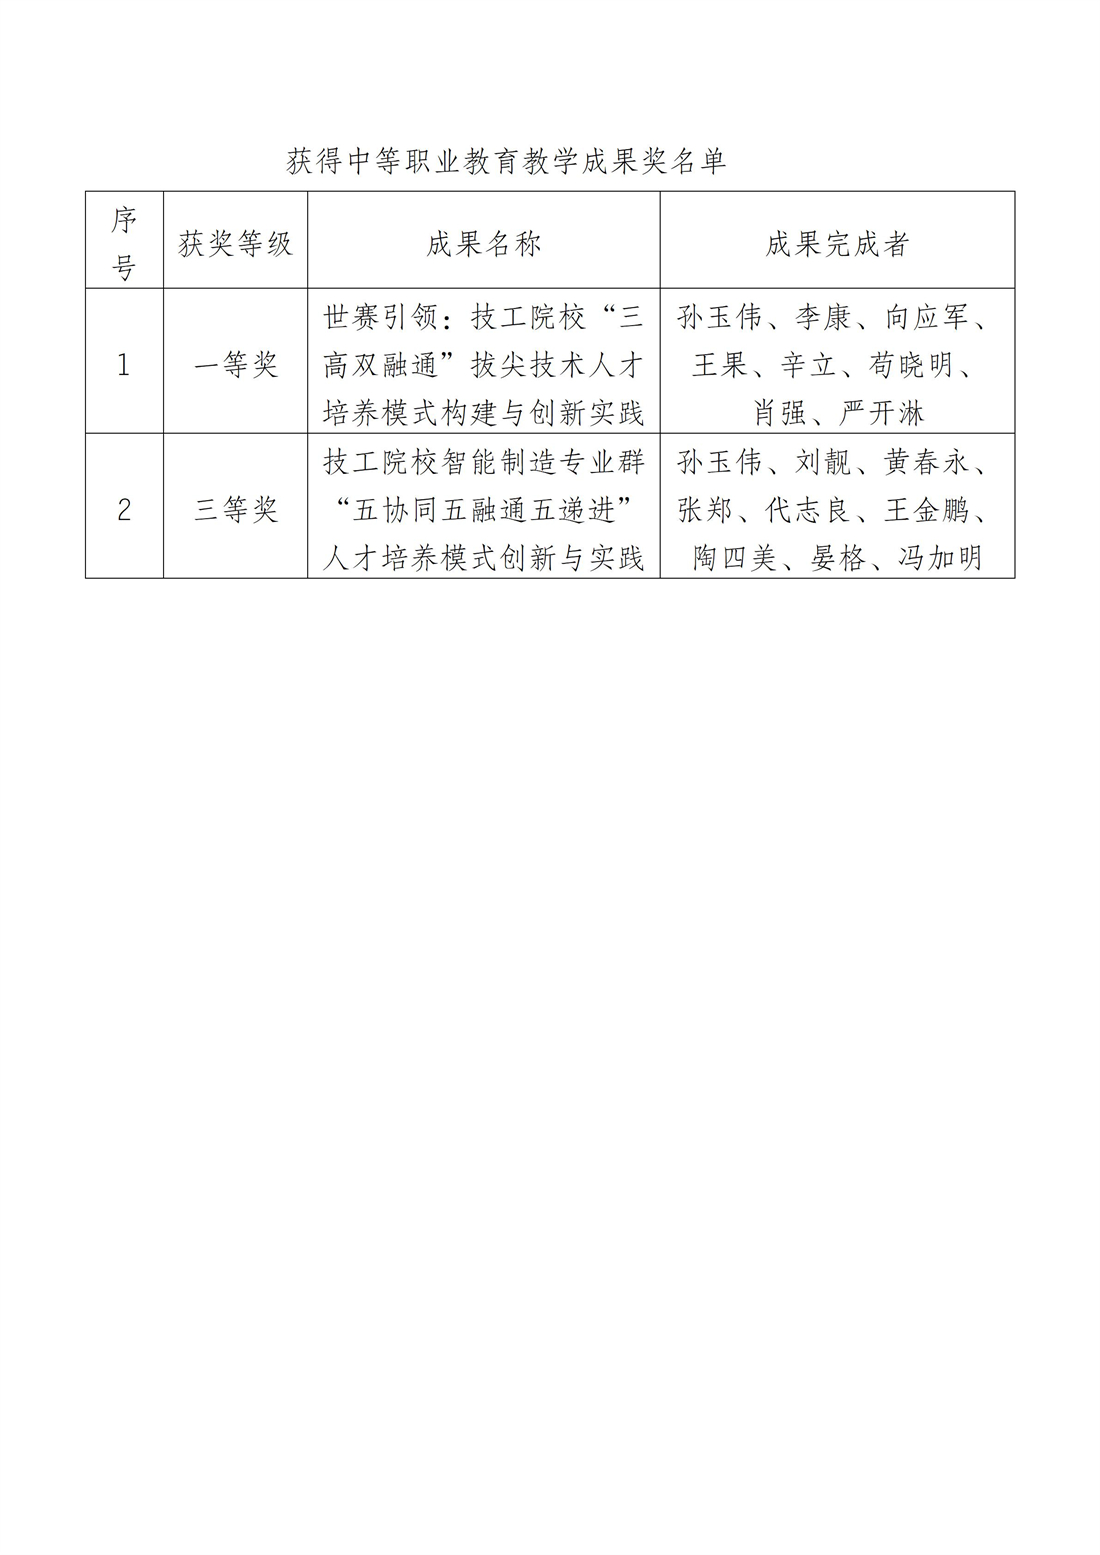 教务部  【喜报】学校获重庆市教学成果奖一等奖1个，二等奖1个_02.jpg